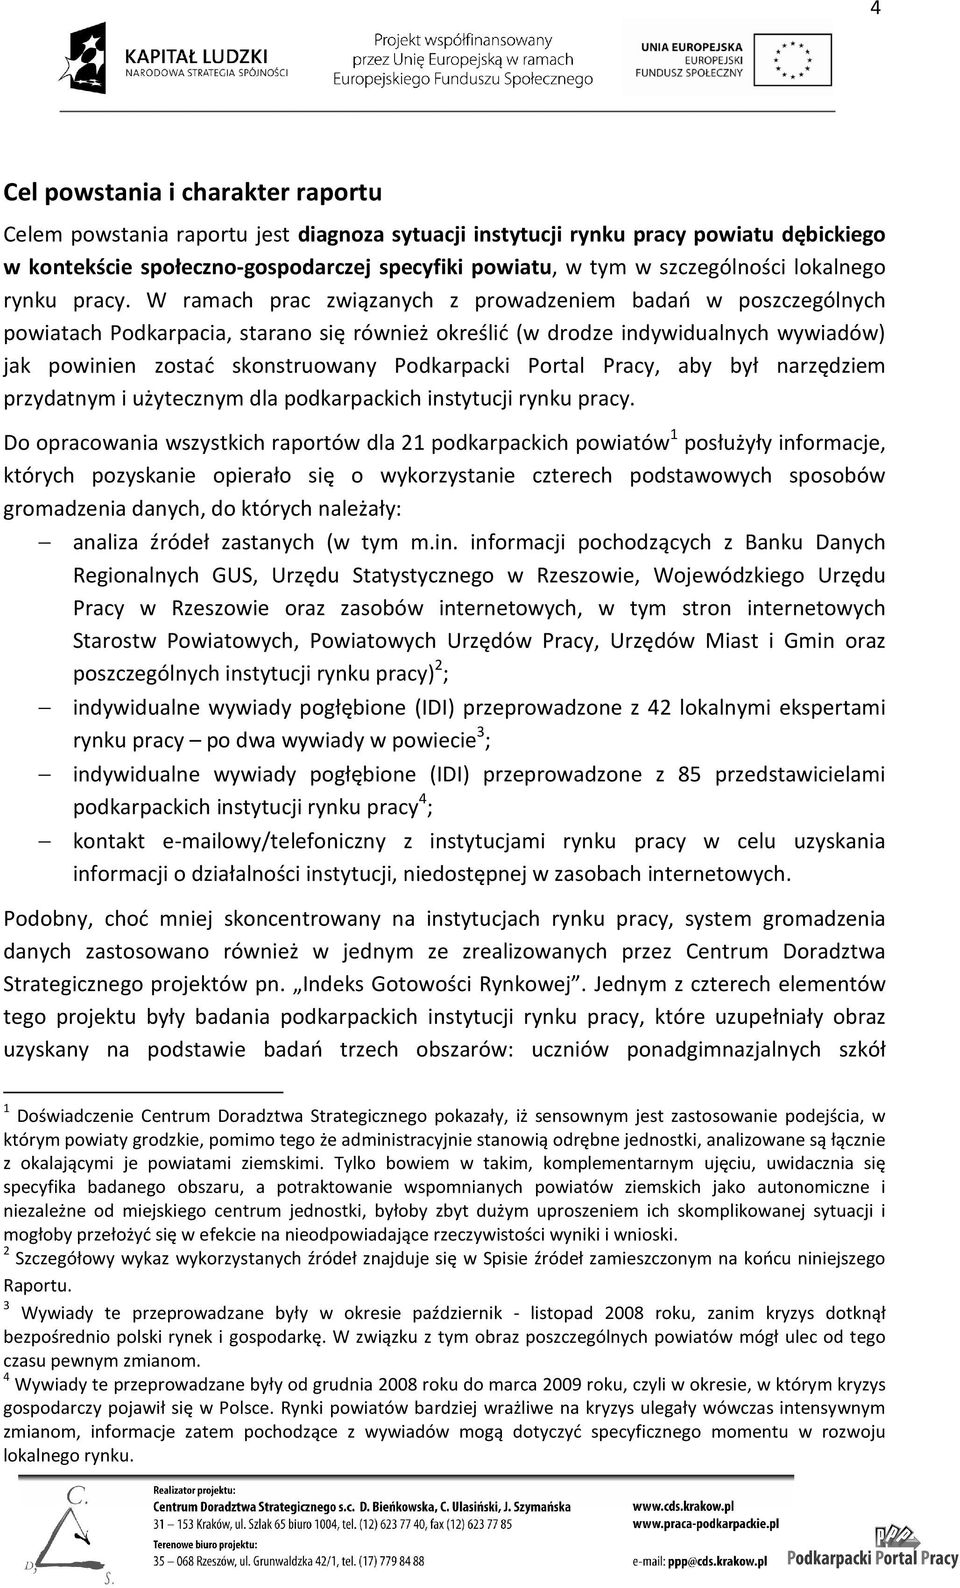 W ramach prac związanych z prowadzeniem badań w poszczególnych powiatach Podkarpacia, starano się również określić (w drodze indywidualnych wywiadów) jak powinien zostać skonstruowany Podkarpacki